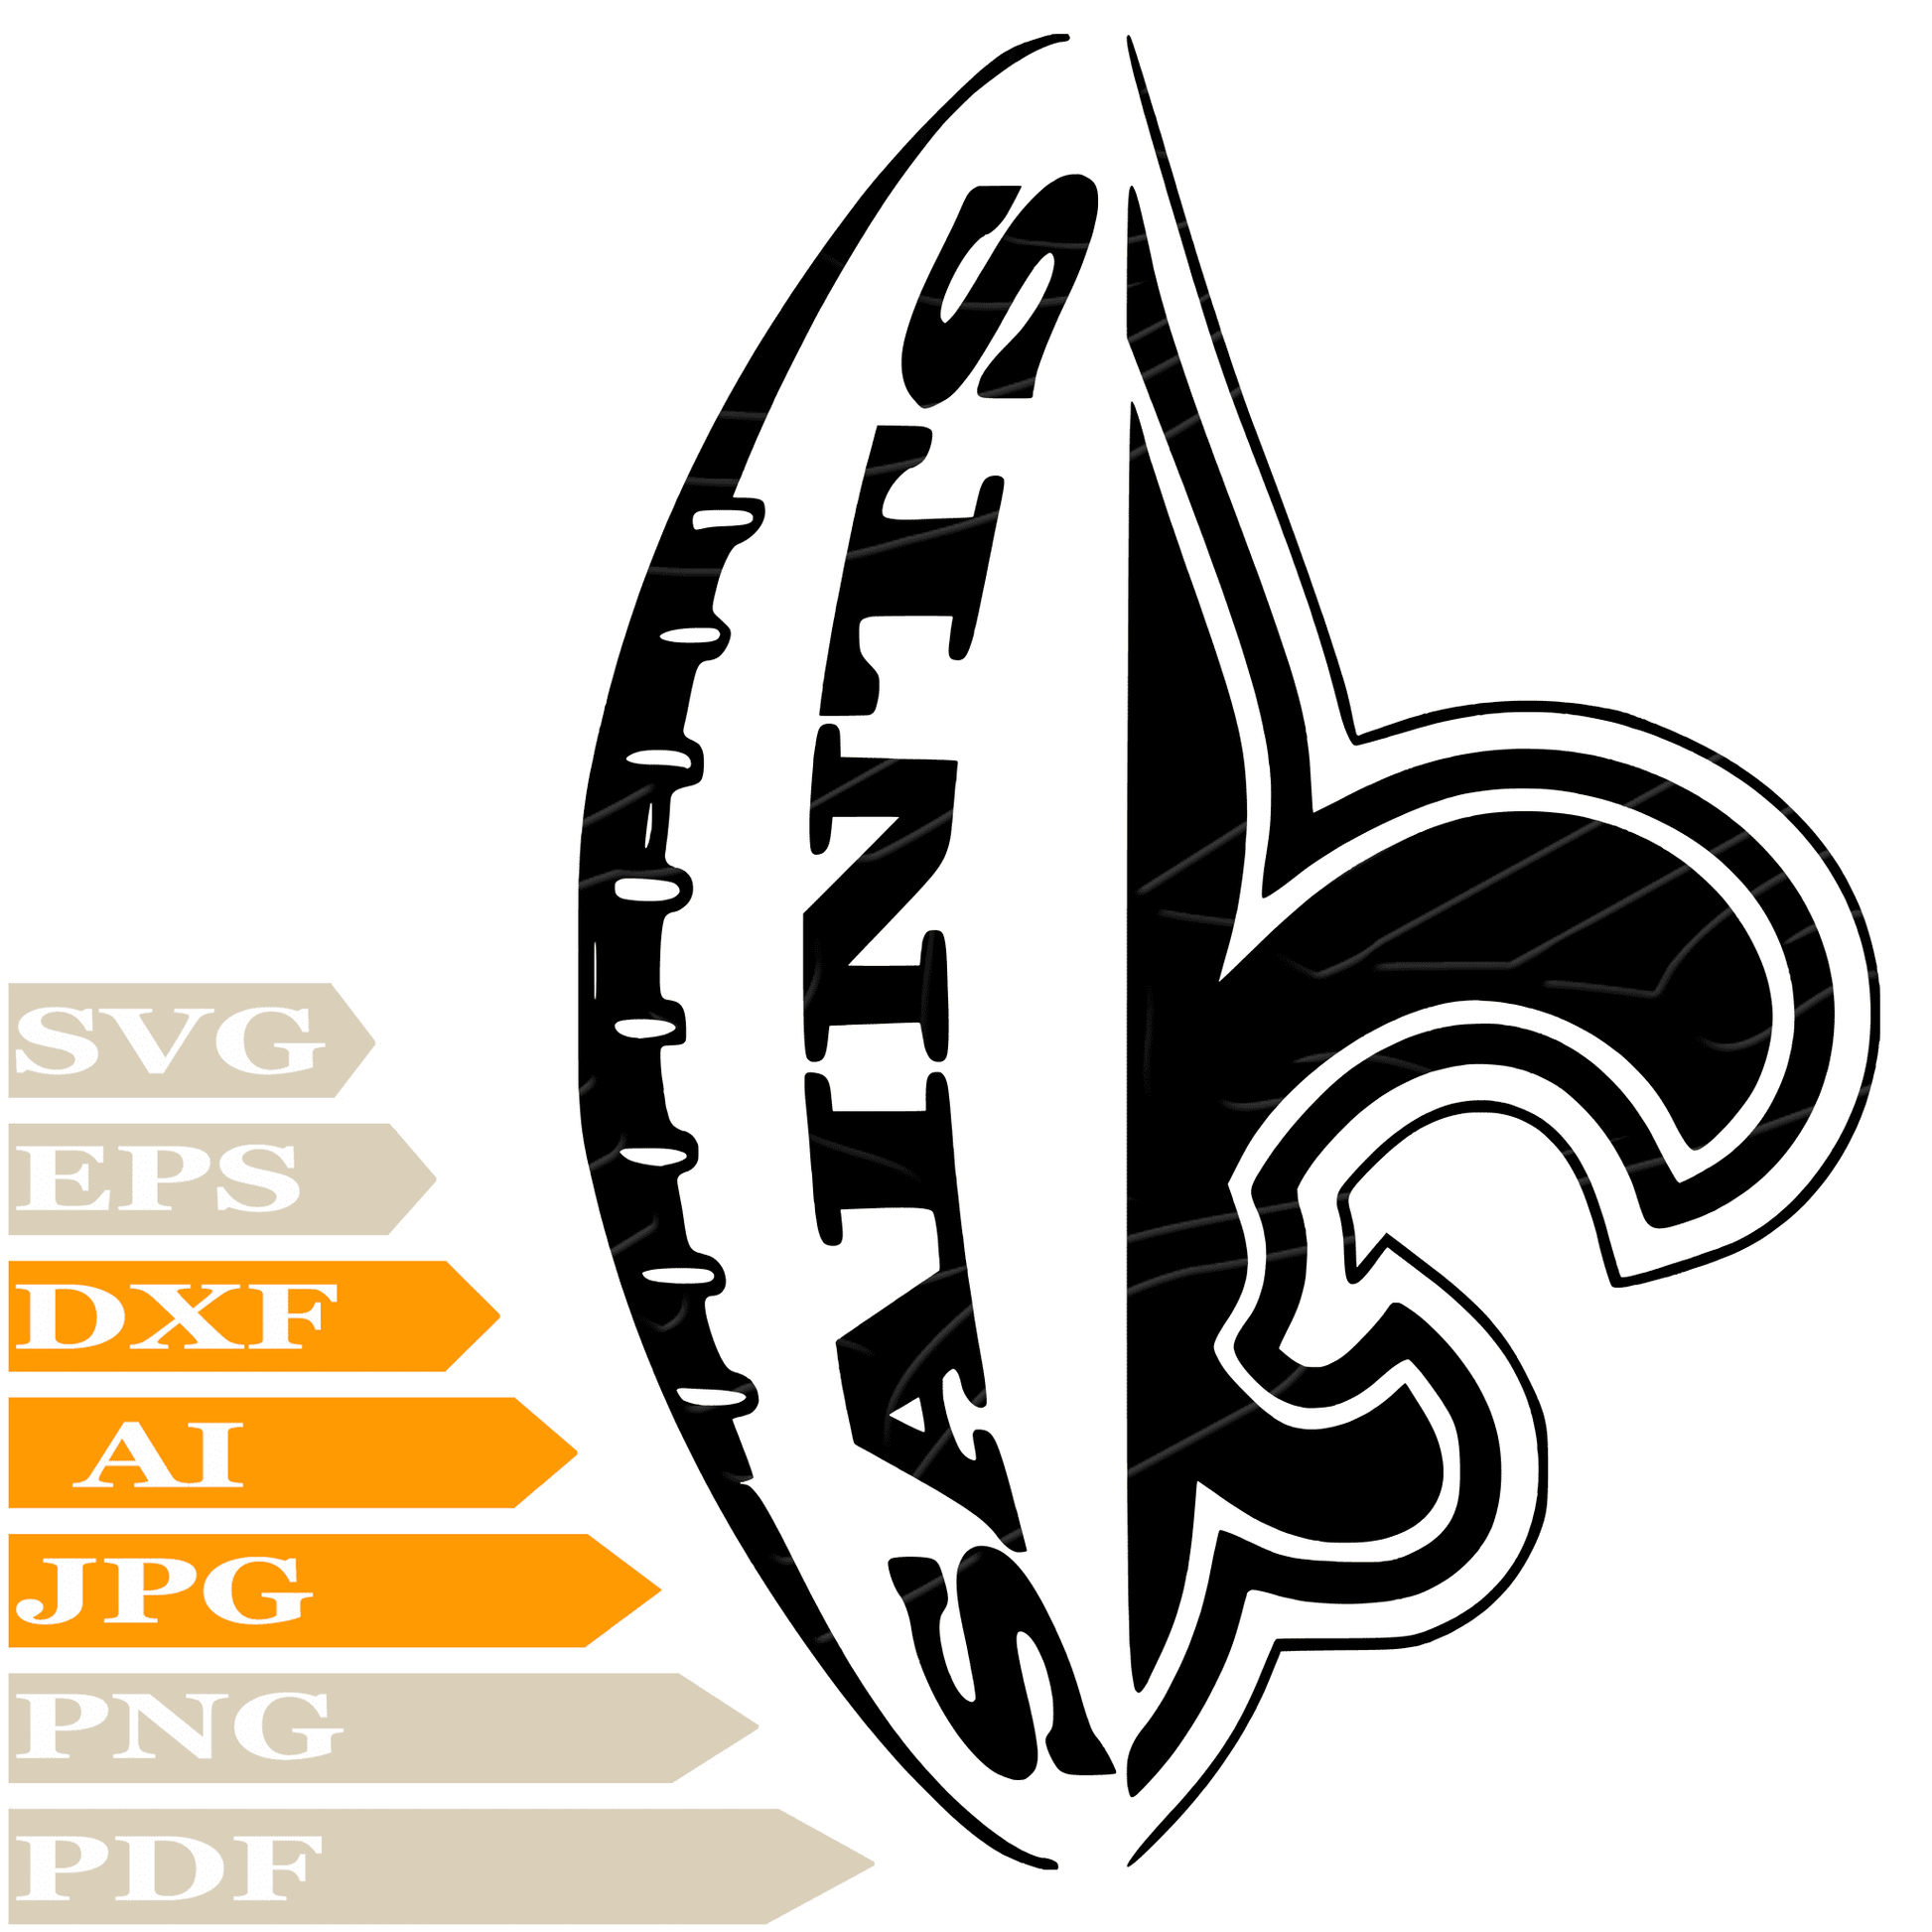 Saints Football SVG File, New Orleans Saints  Logo SVG Design, American Football SVG, New Orleans Saints Vector Graphics, Saints Football Logo PNG, Image Cut, For Cricut, Clipart, Cut File, Print, Digital Download, T-Shirt, Silhouette